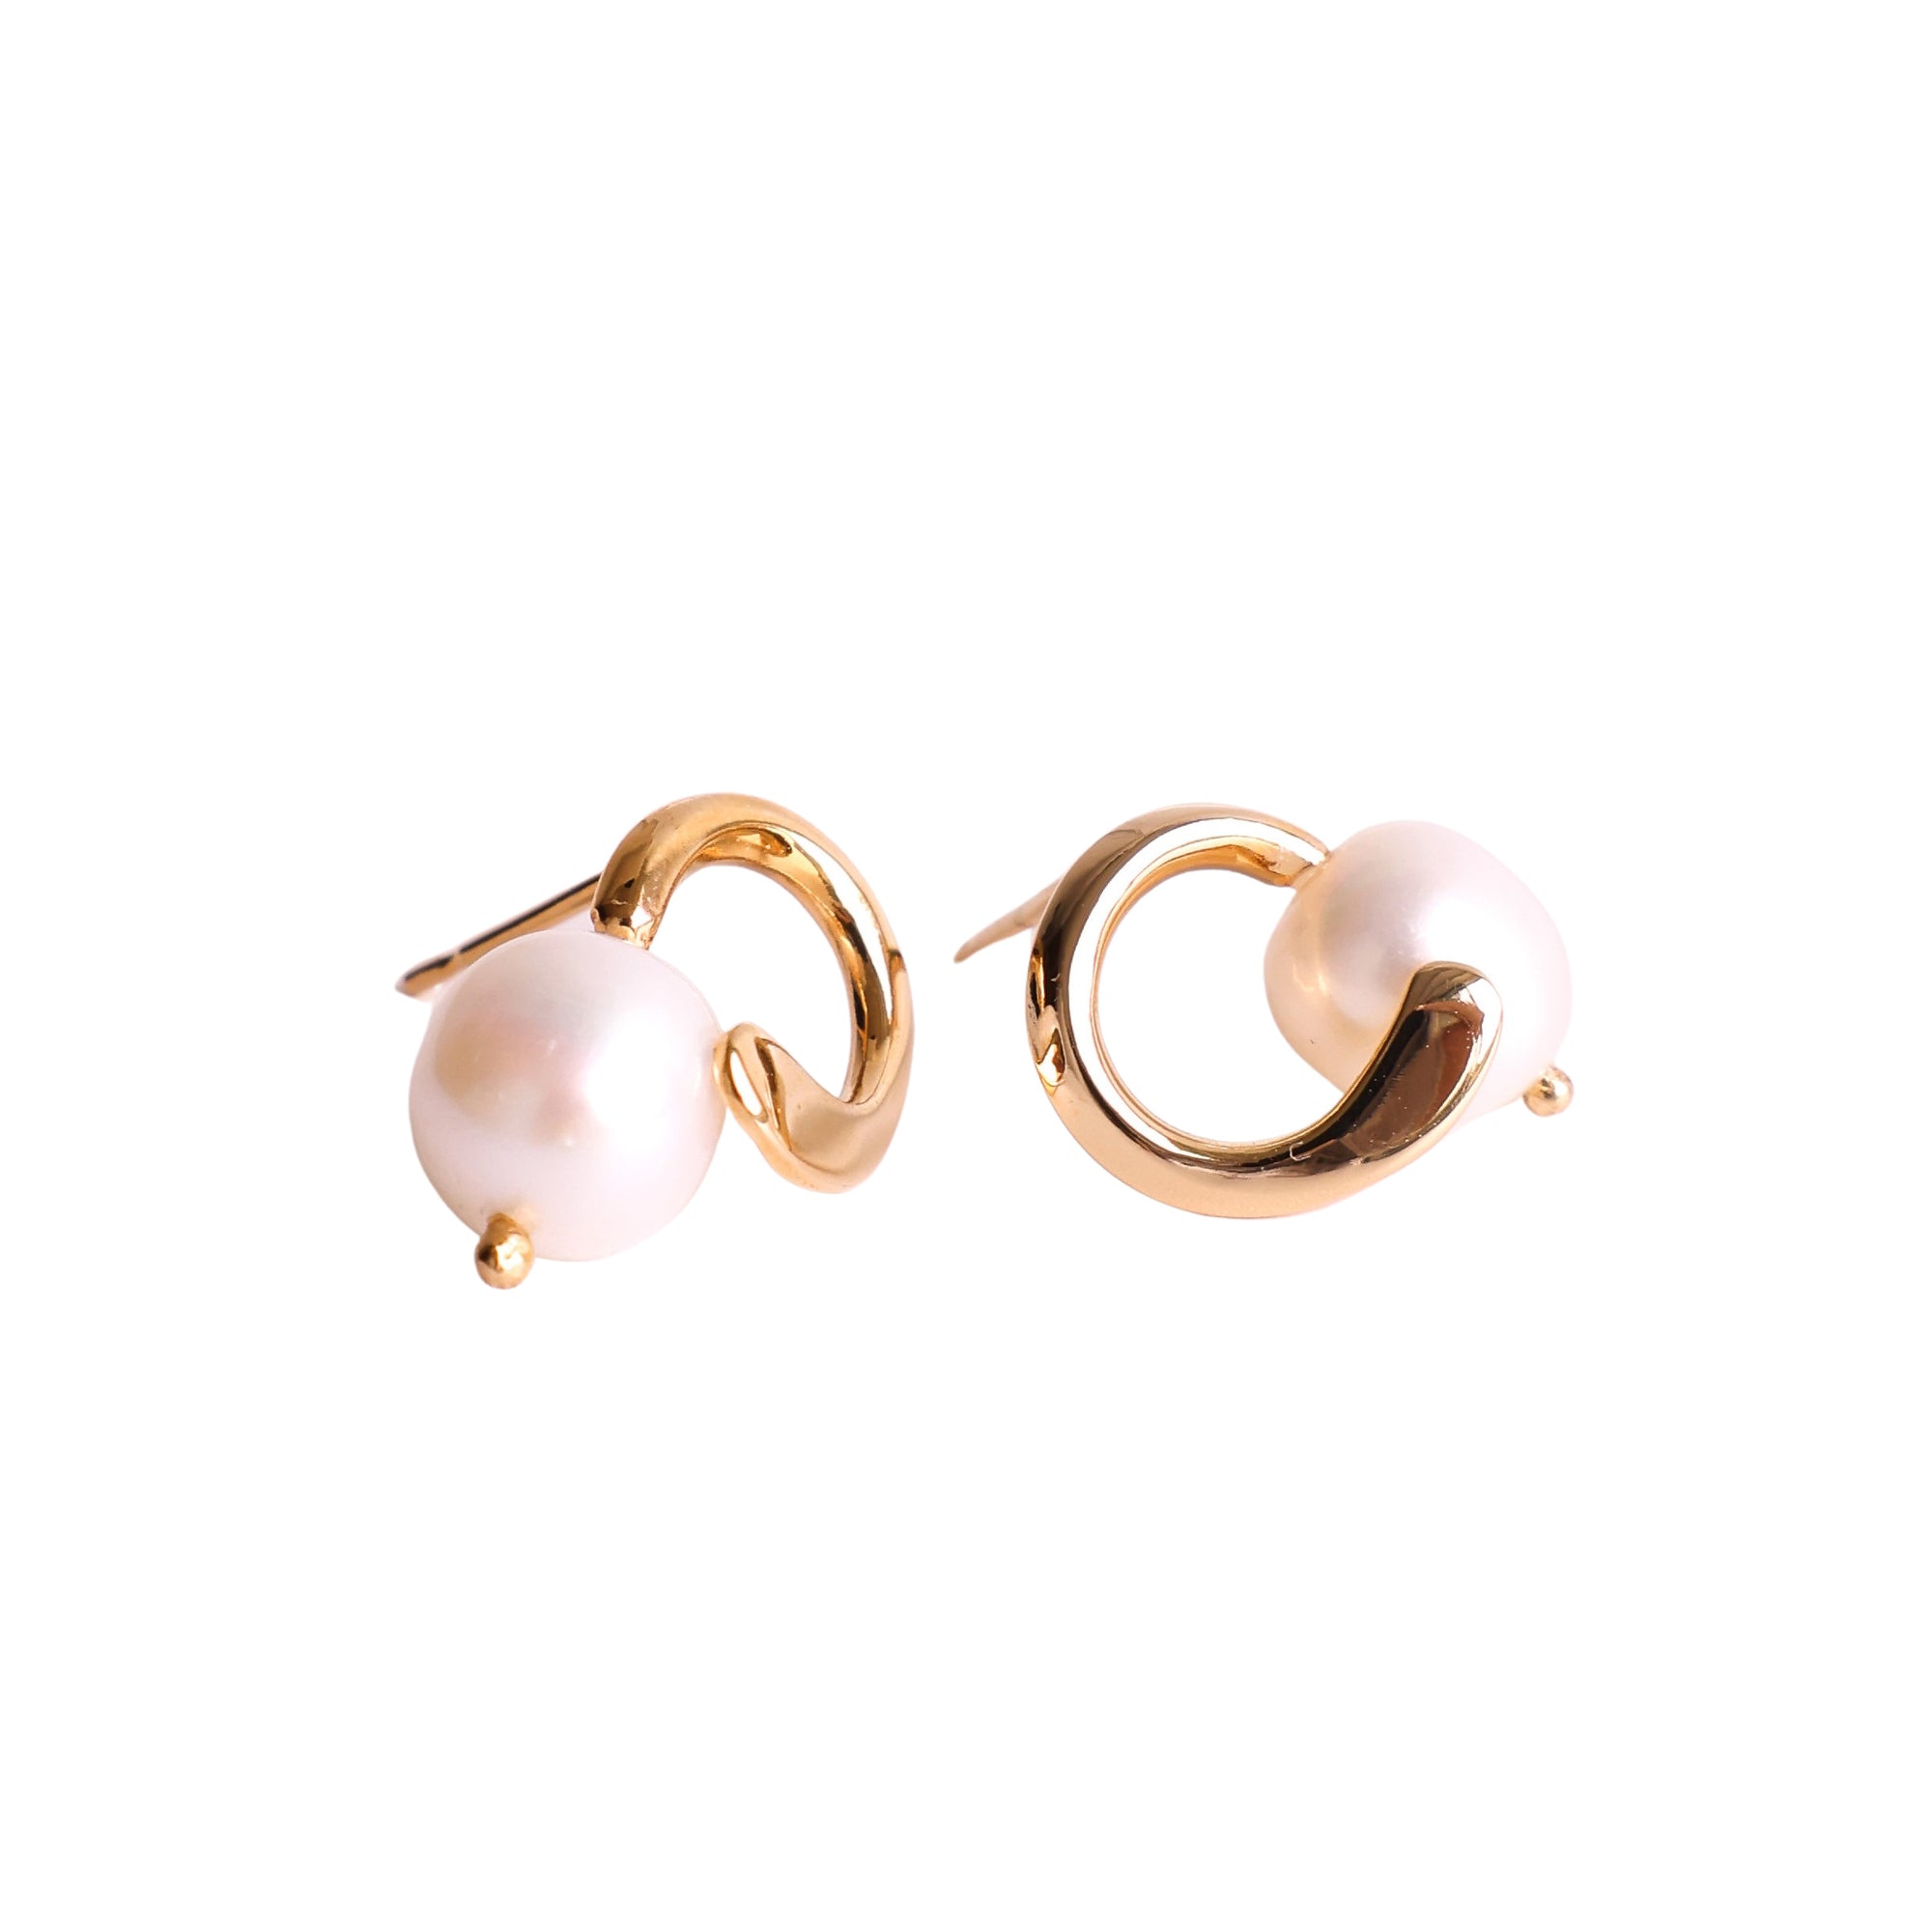 Nina pendientes · earrings